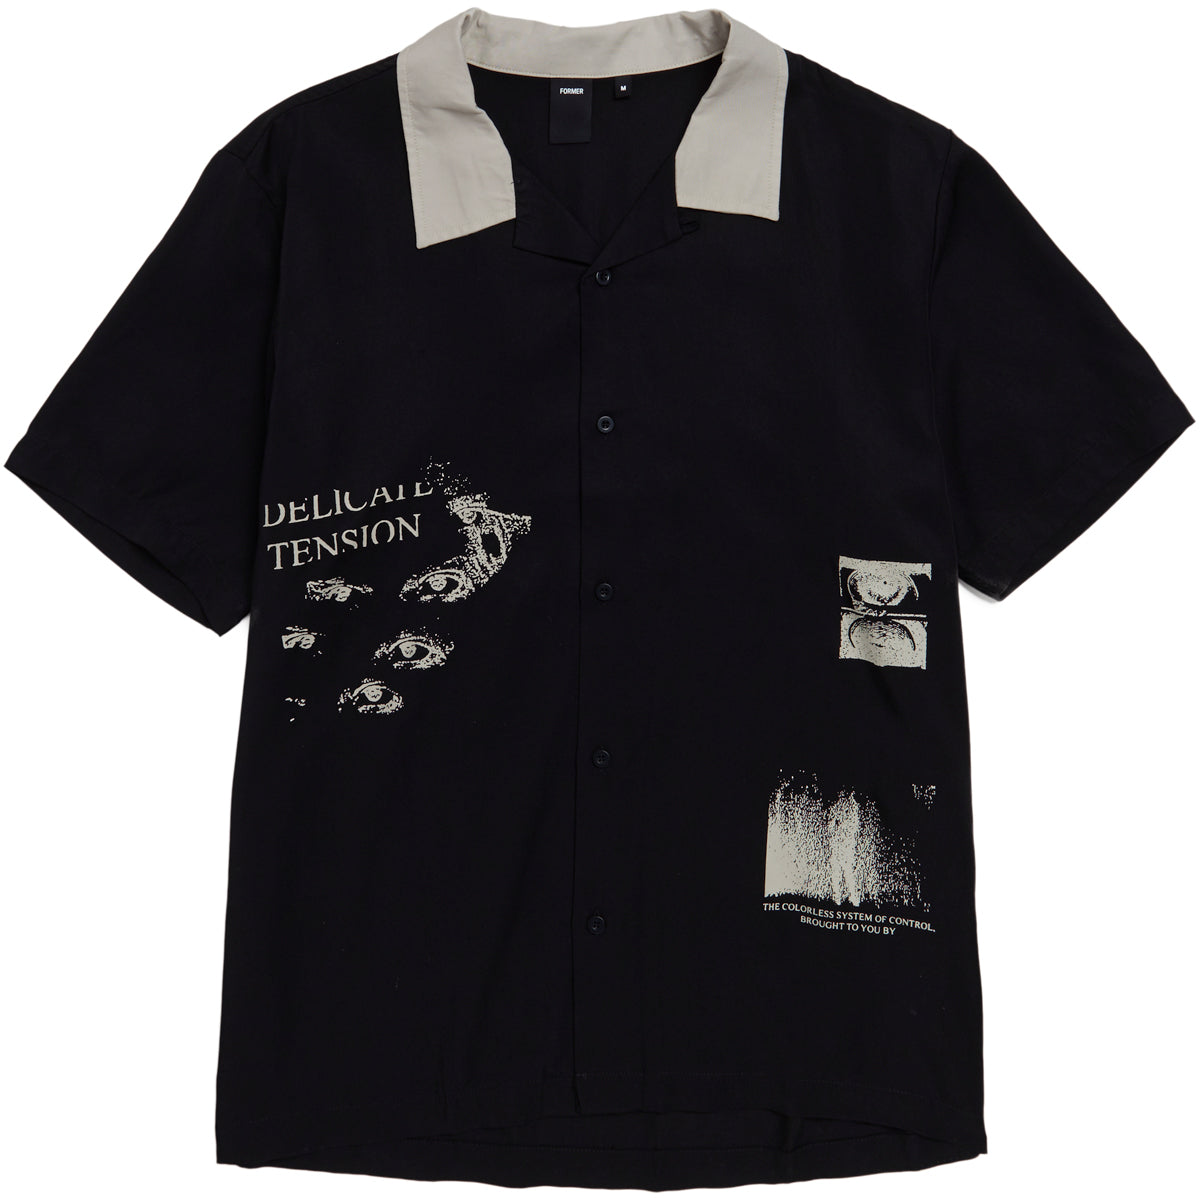 Former Delicate Border Shirt - Black image 1